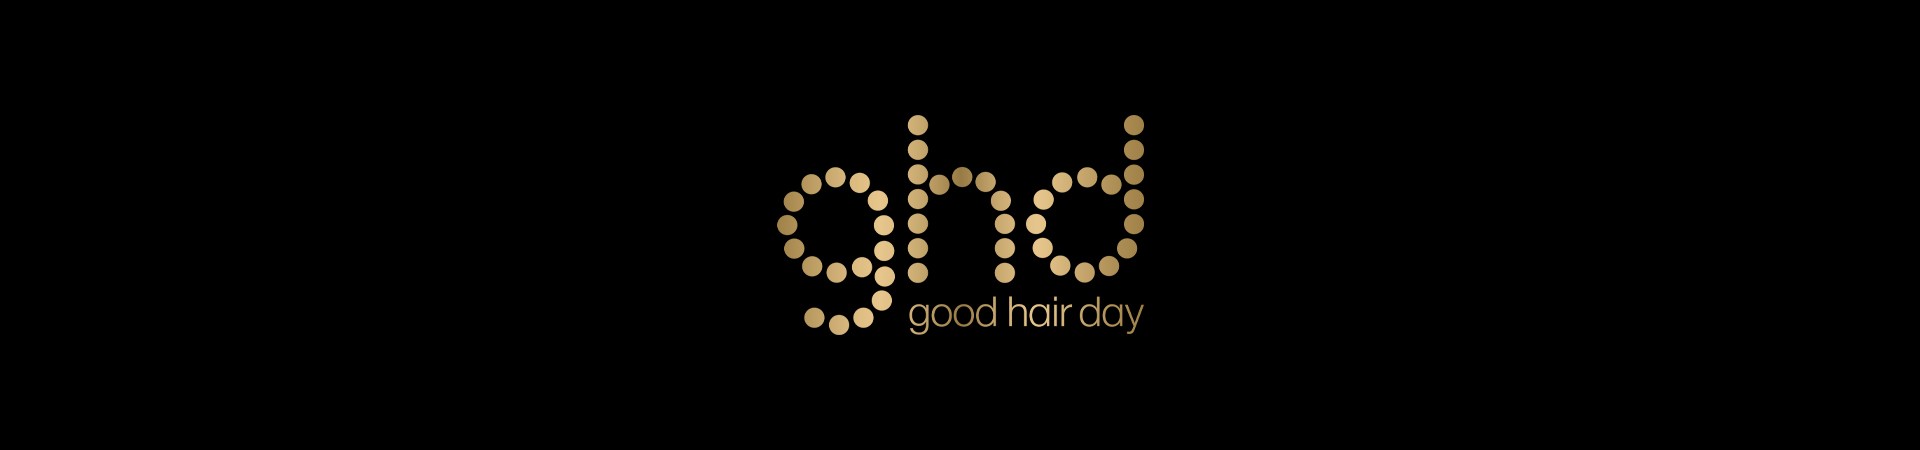 GHD - Good Hair Day